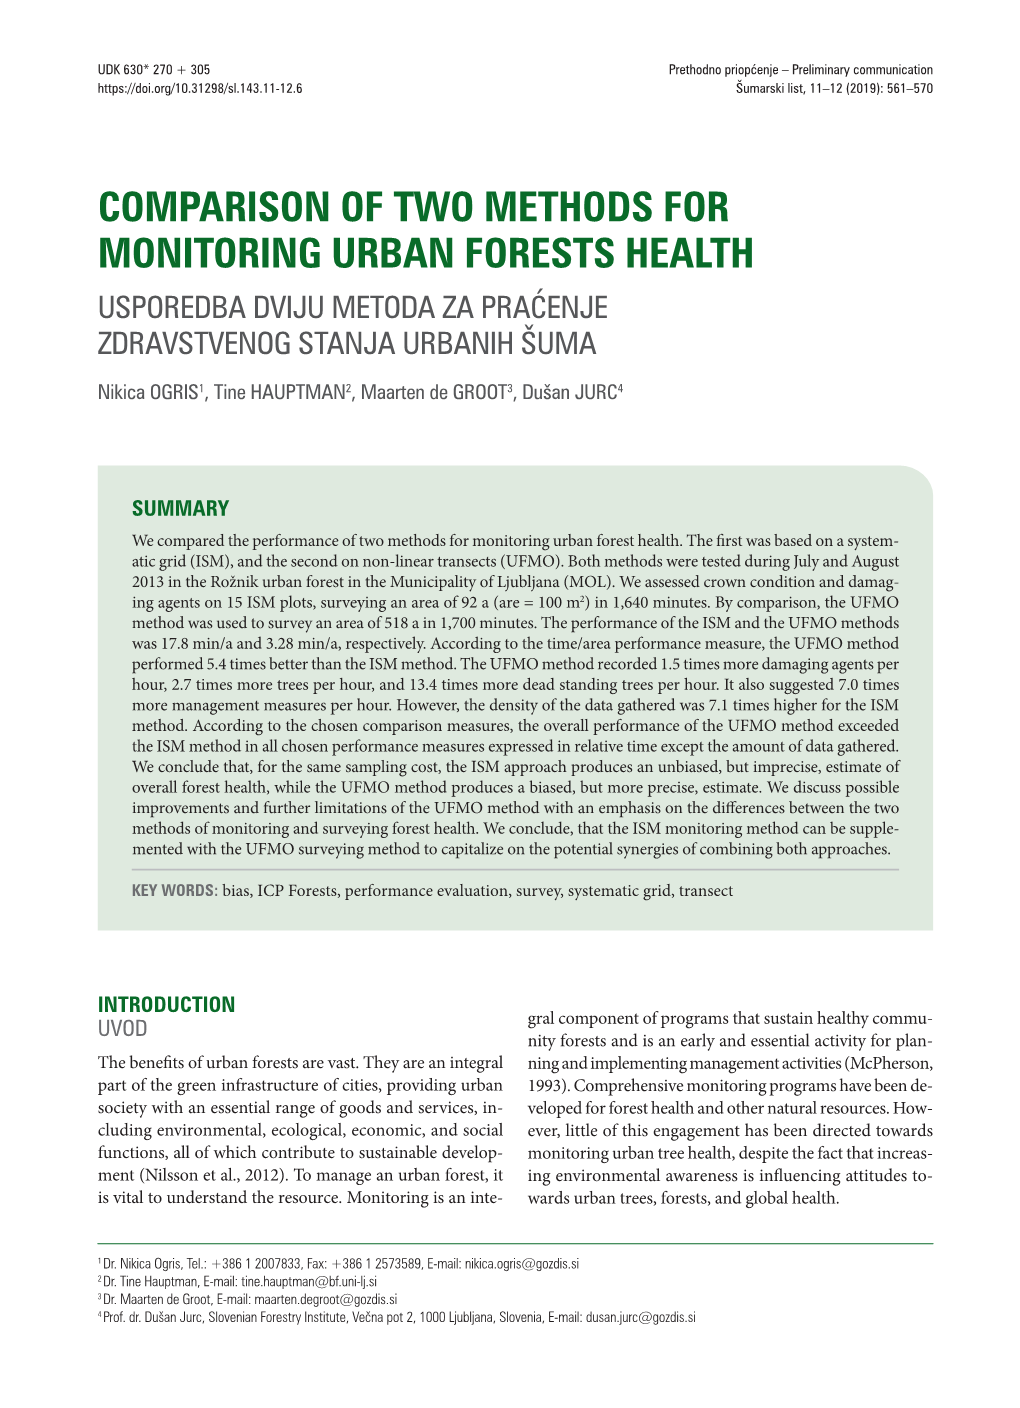 Comparison of Two Methods for Monitoring Urban Forests Health Usporedba Dviju Metoda Za Praćenje Zdravstvenog Stanja Urbanih Šuma